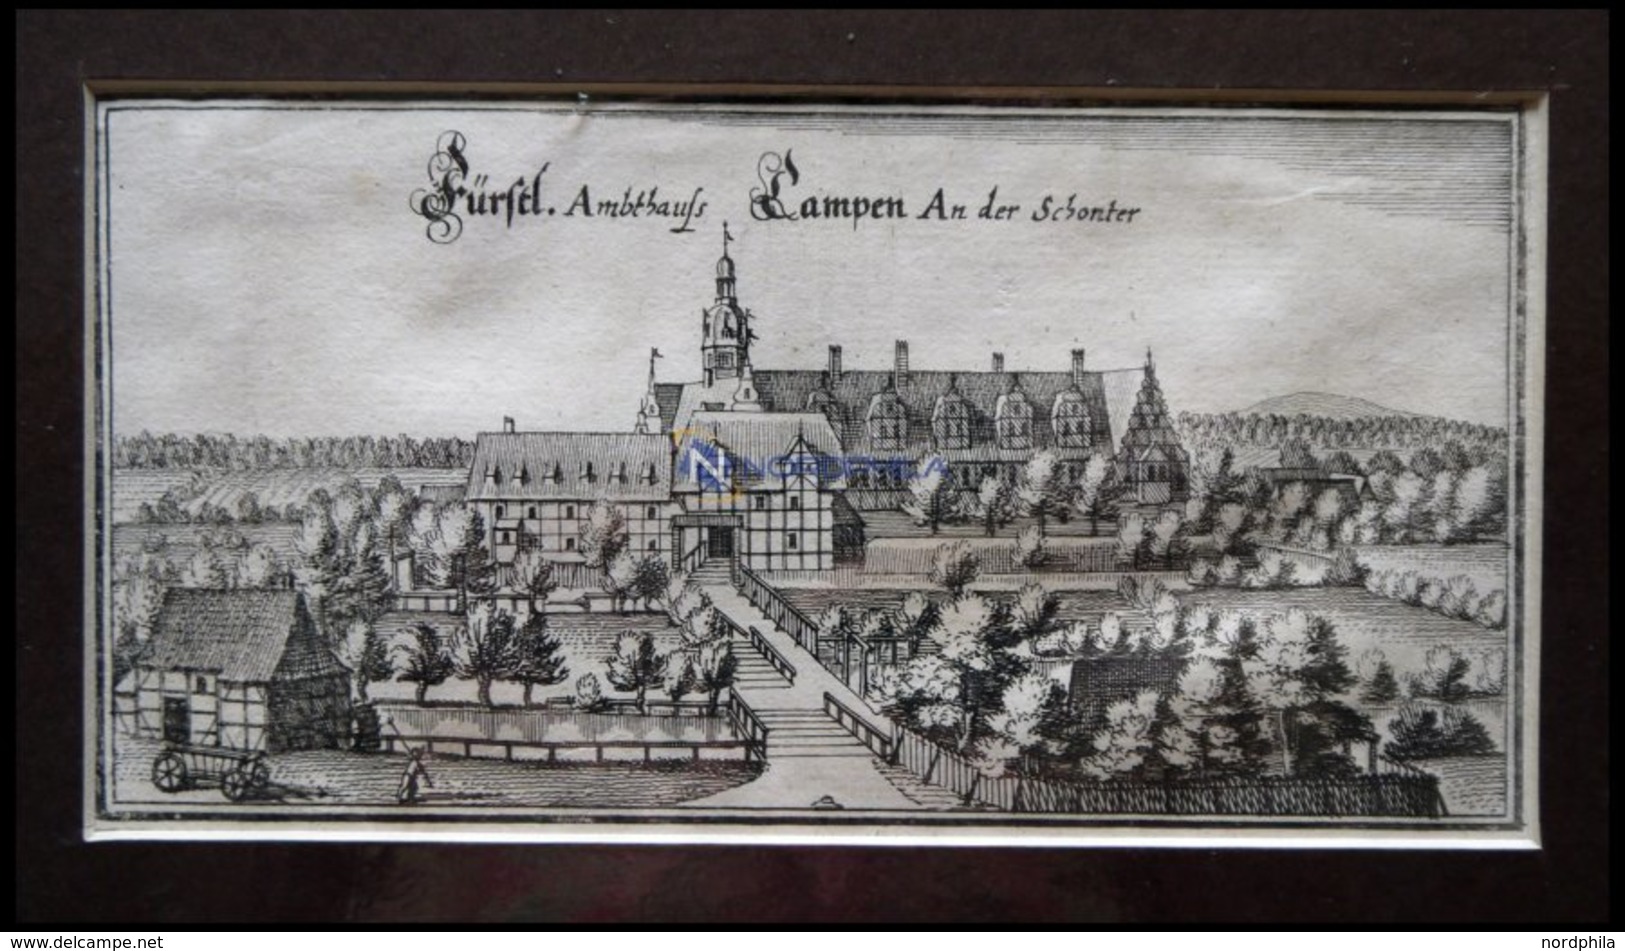 CAMPEN: Das Fürstliche Amtshaus An Der Schonter,Kupferstich Von Merian Um 1645 - Litografia